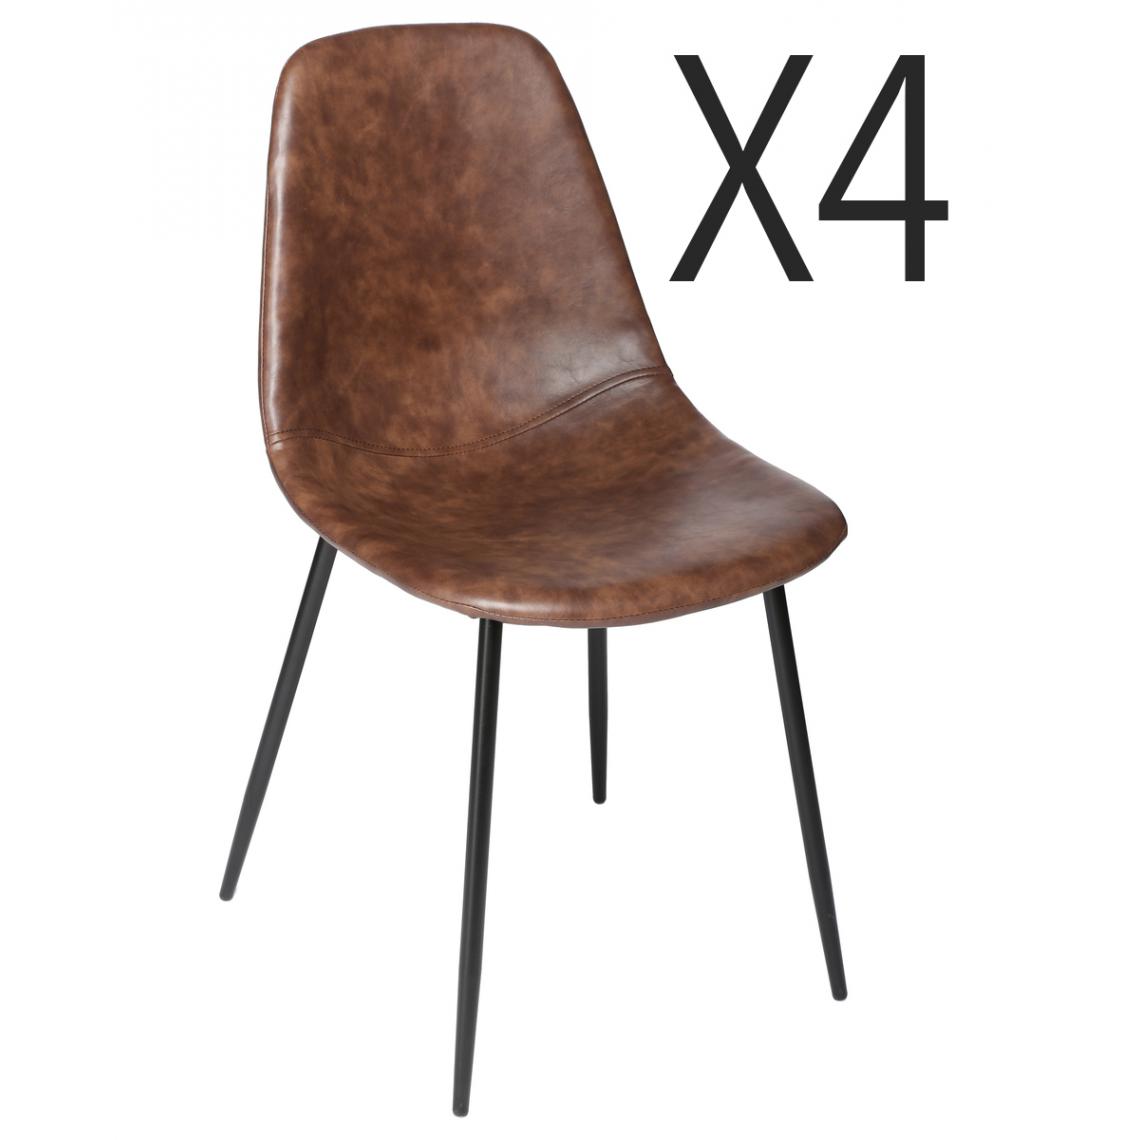 Pegane - Lot de 4 chaises coloris marron en polyuréthane - Longueur 52,5 x Profondeur 43,5 x Hauteur 82 cm - Chaises